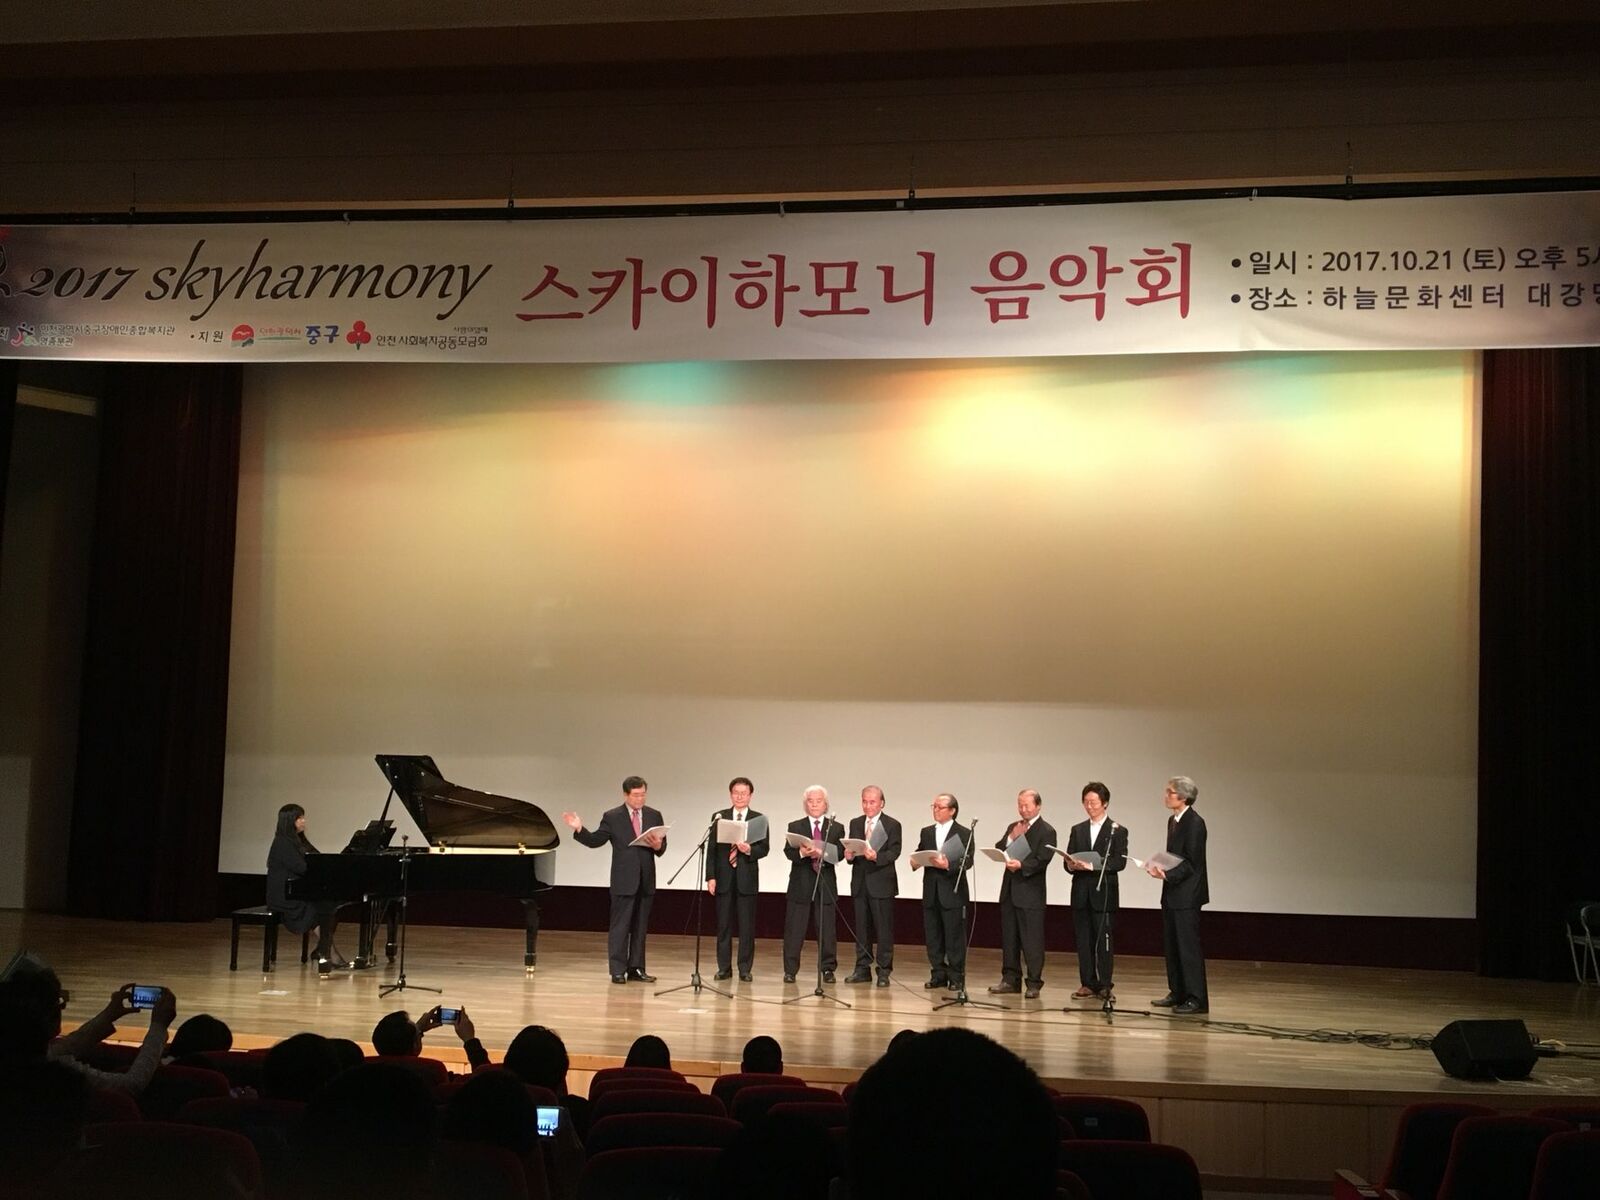 2017년 스카이하모니 음악회